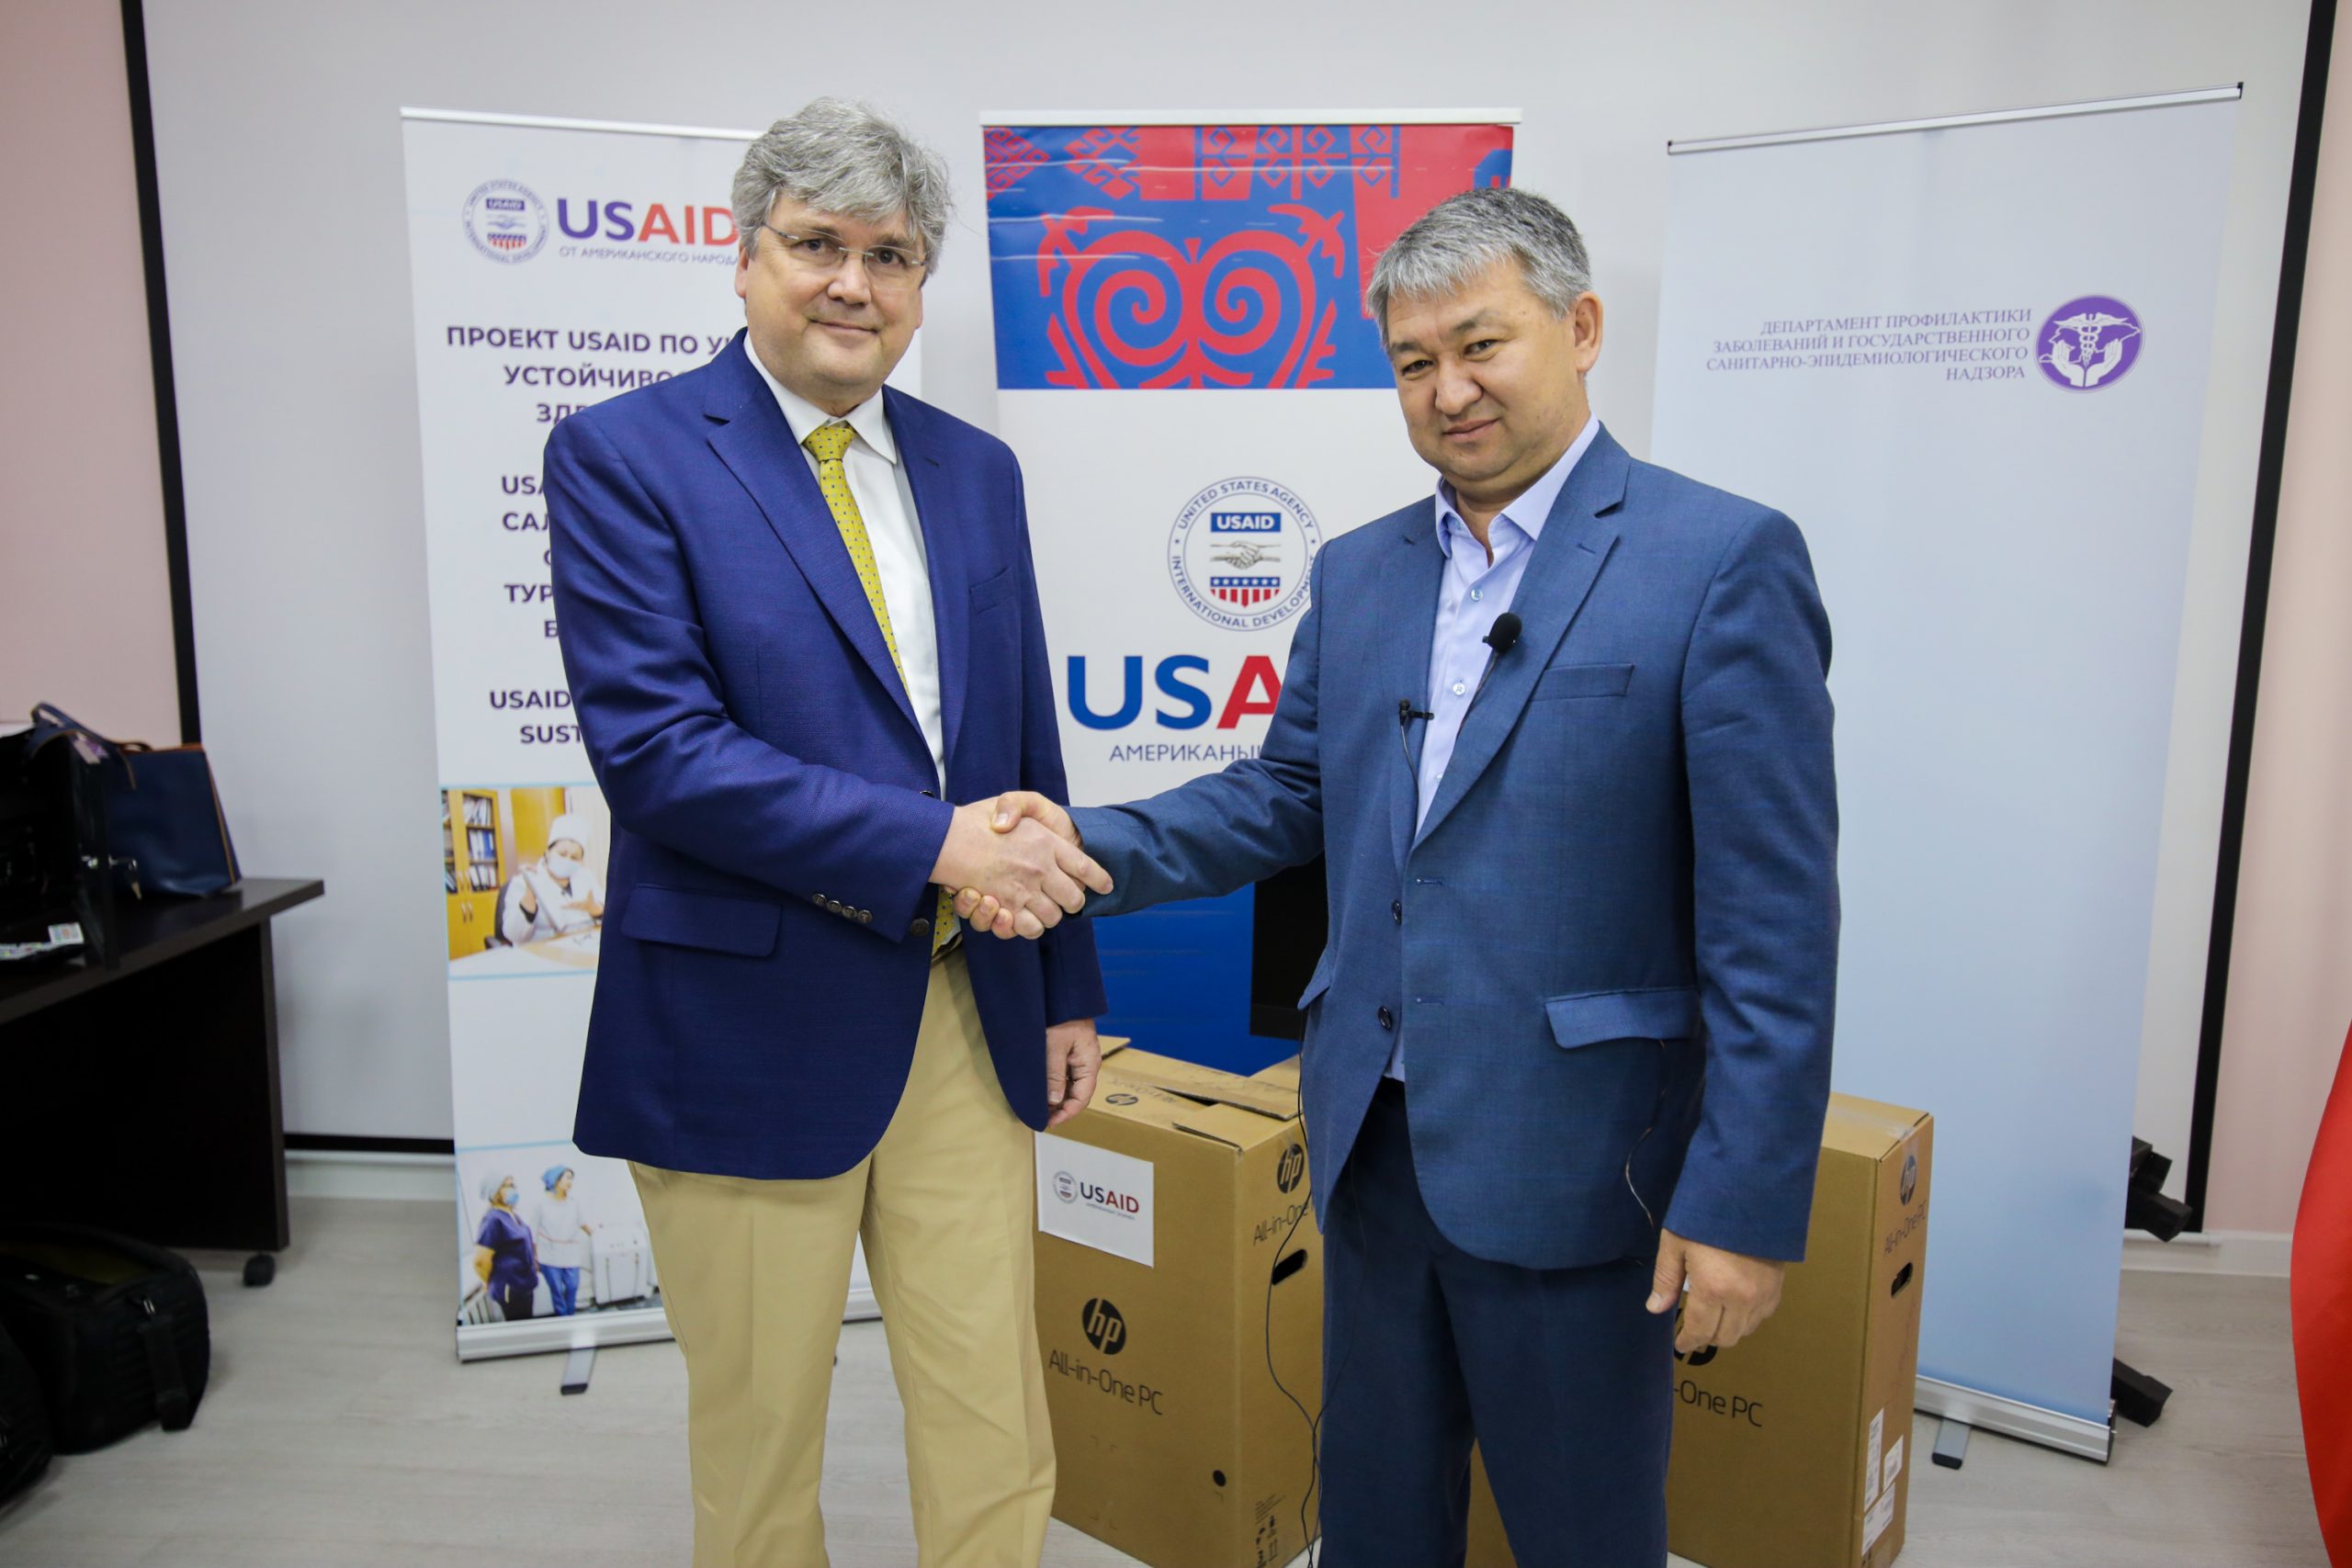 Кыргызстан получил от USAID медицинское оборудование на общую сумму 31 миллион сомов